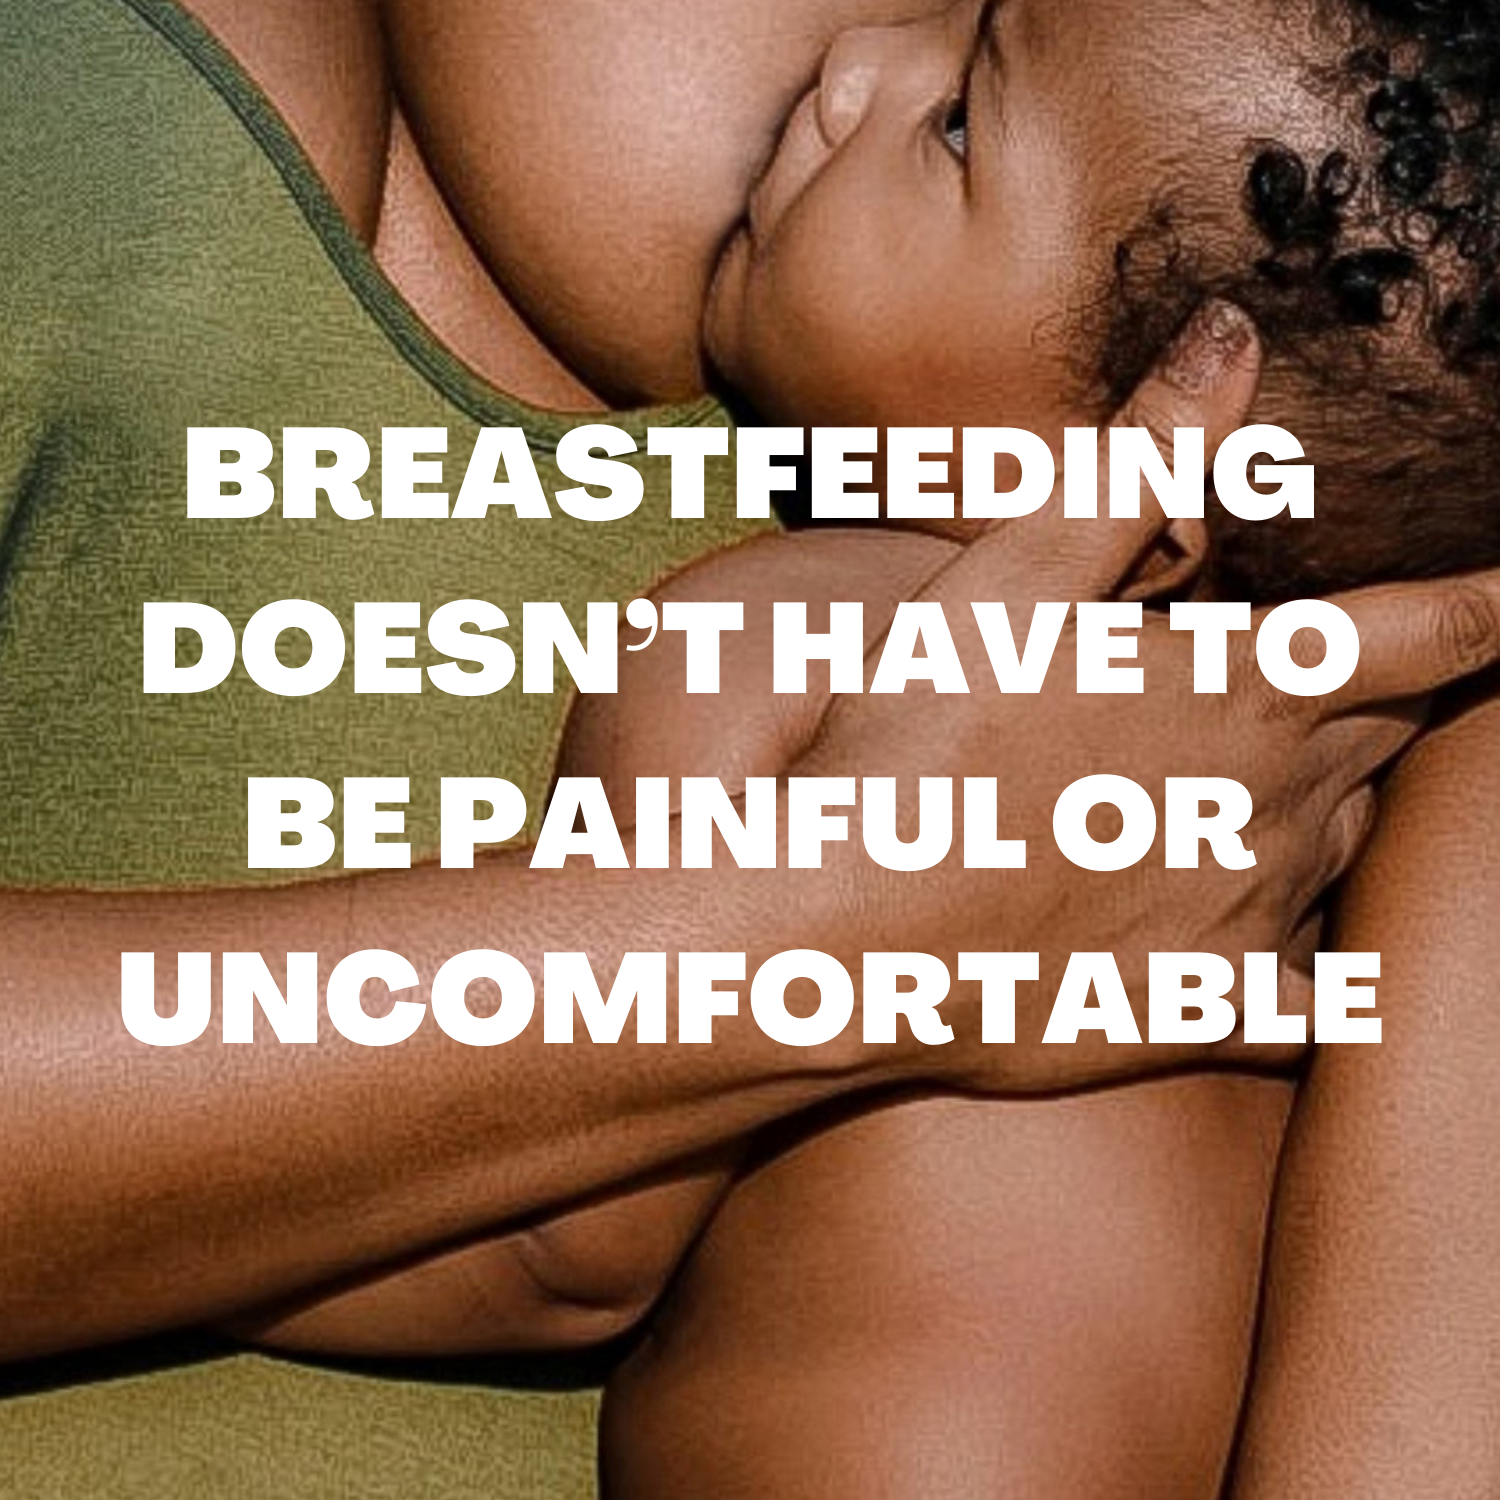 cabocreme painful breastfeeding